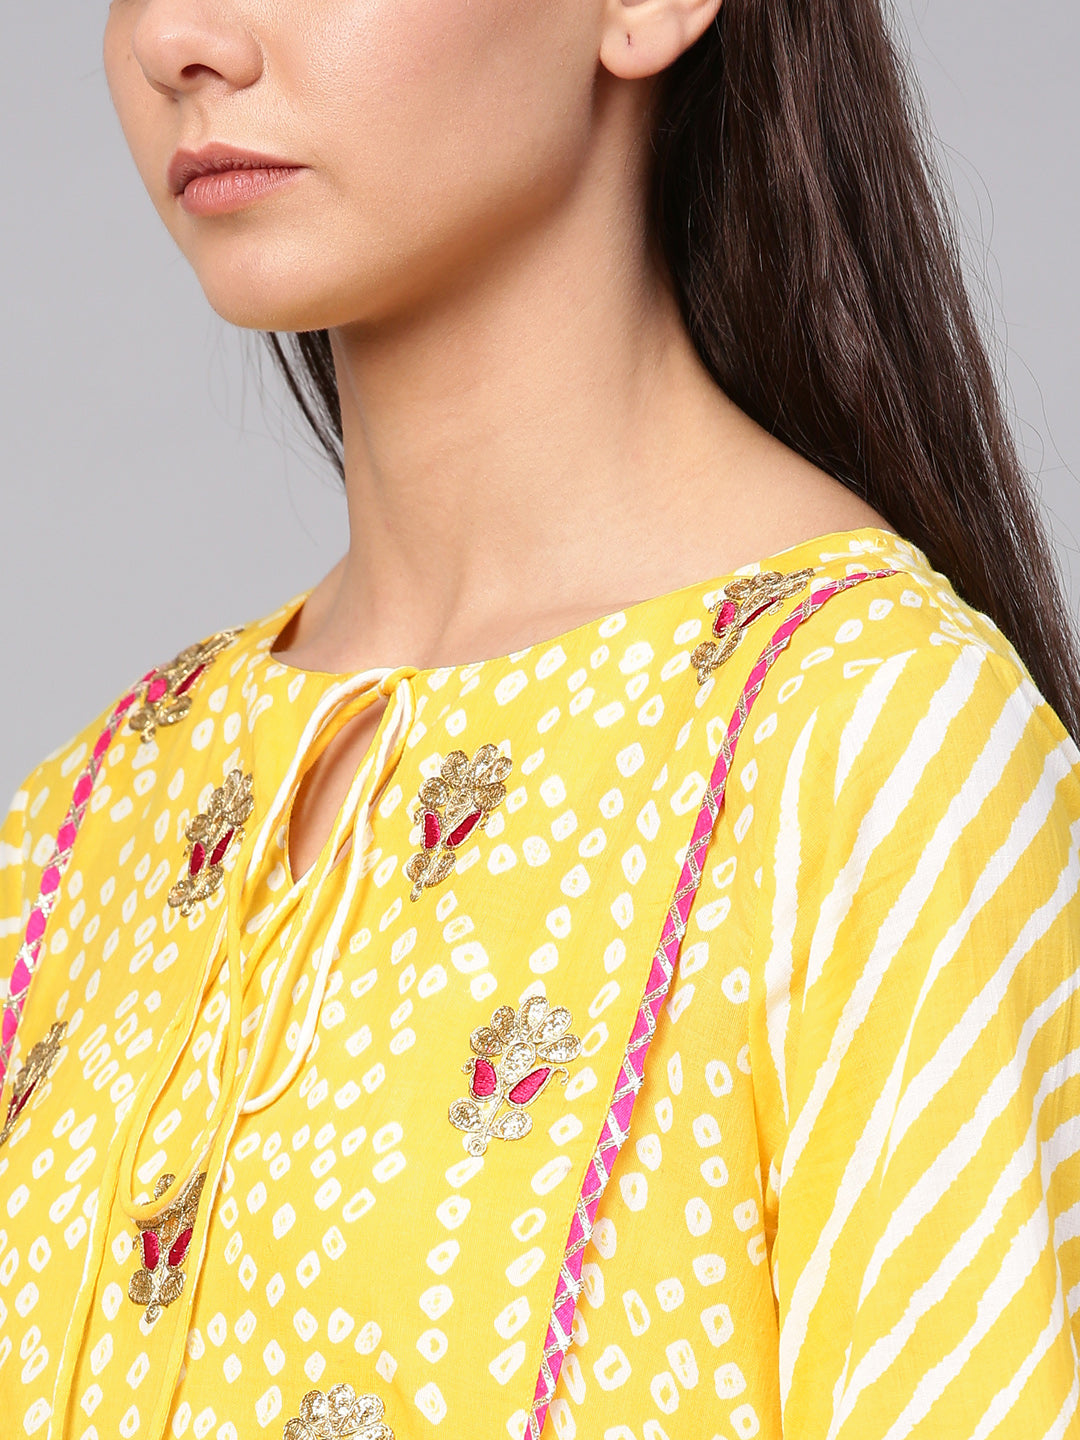 Women's Yellow & White Bandhani Print Kurta With Palazzos - Bhama Couture